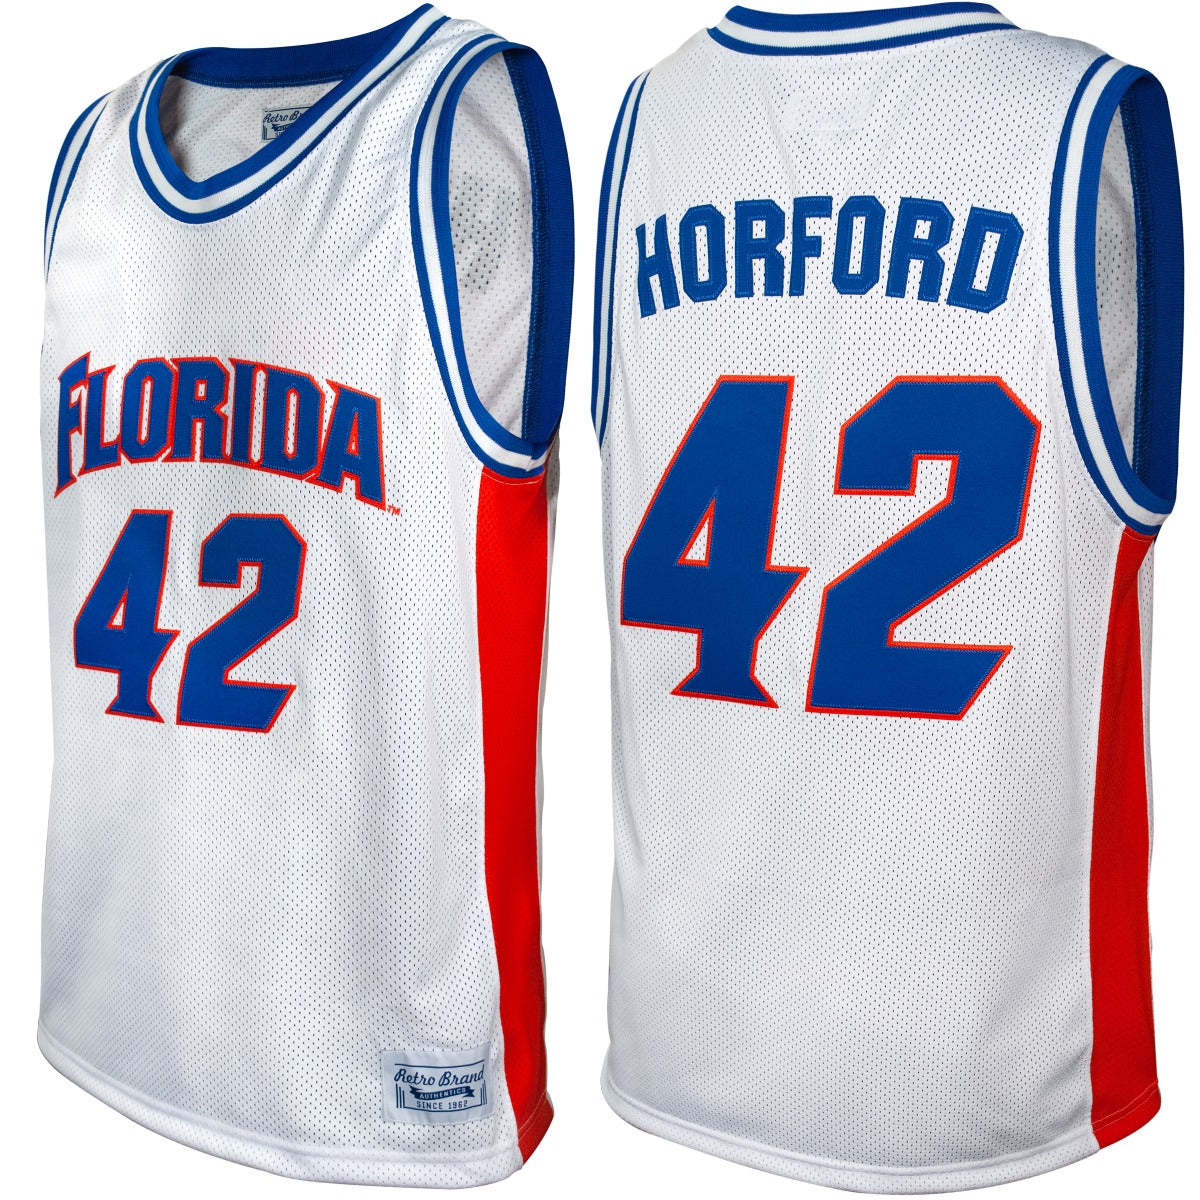 Florida Gators Al Horford Throwback Jersey